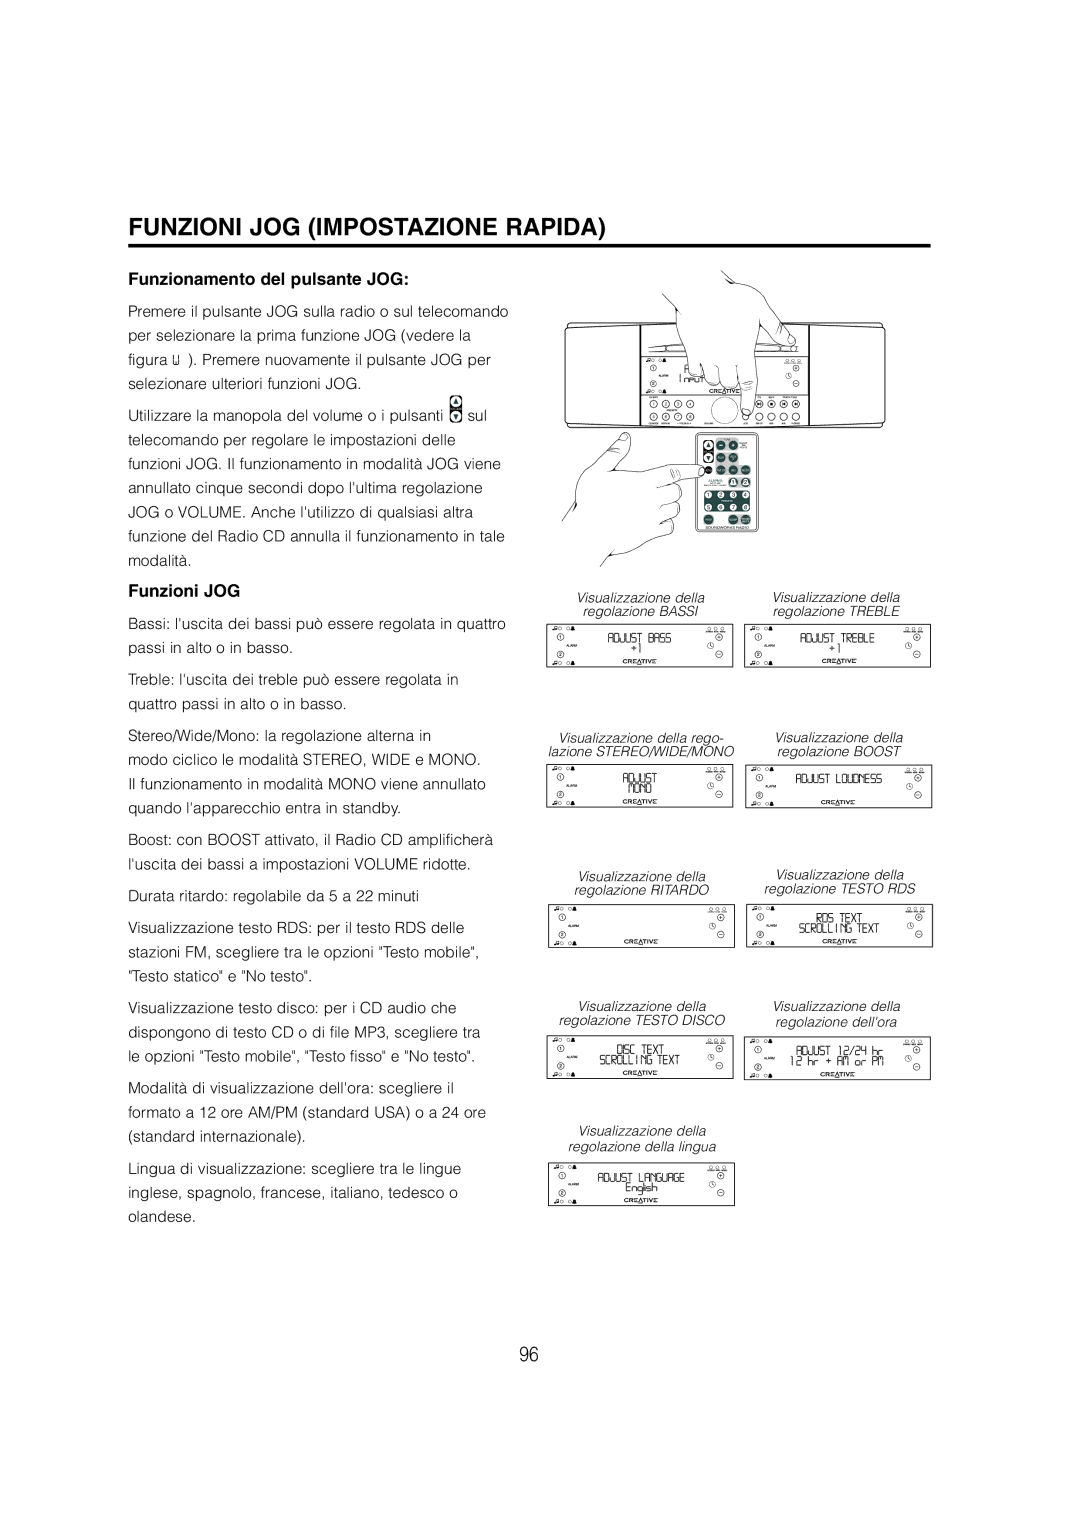 Cambridge SoundWorks C174RCNB user manual Funzioni JOG Impostazione Rapida, Funzionamento del pulsante JOG 